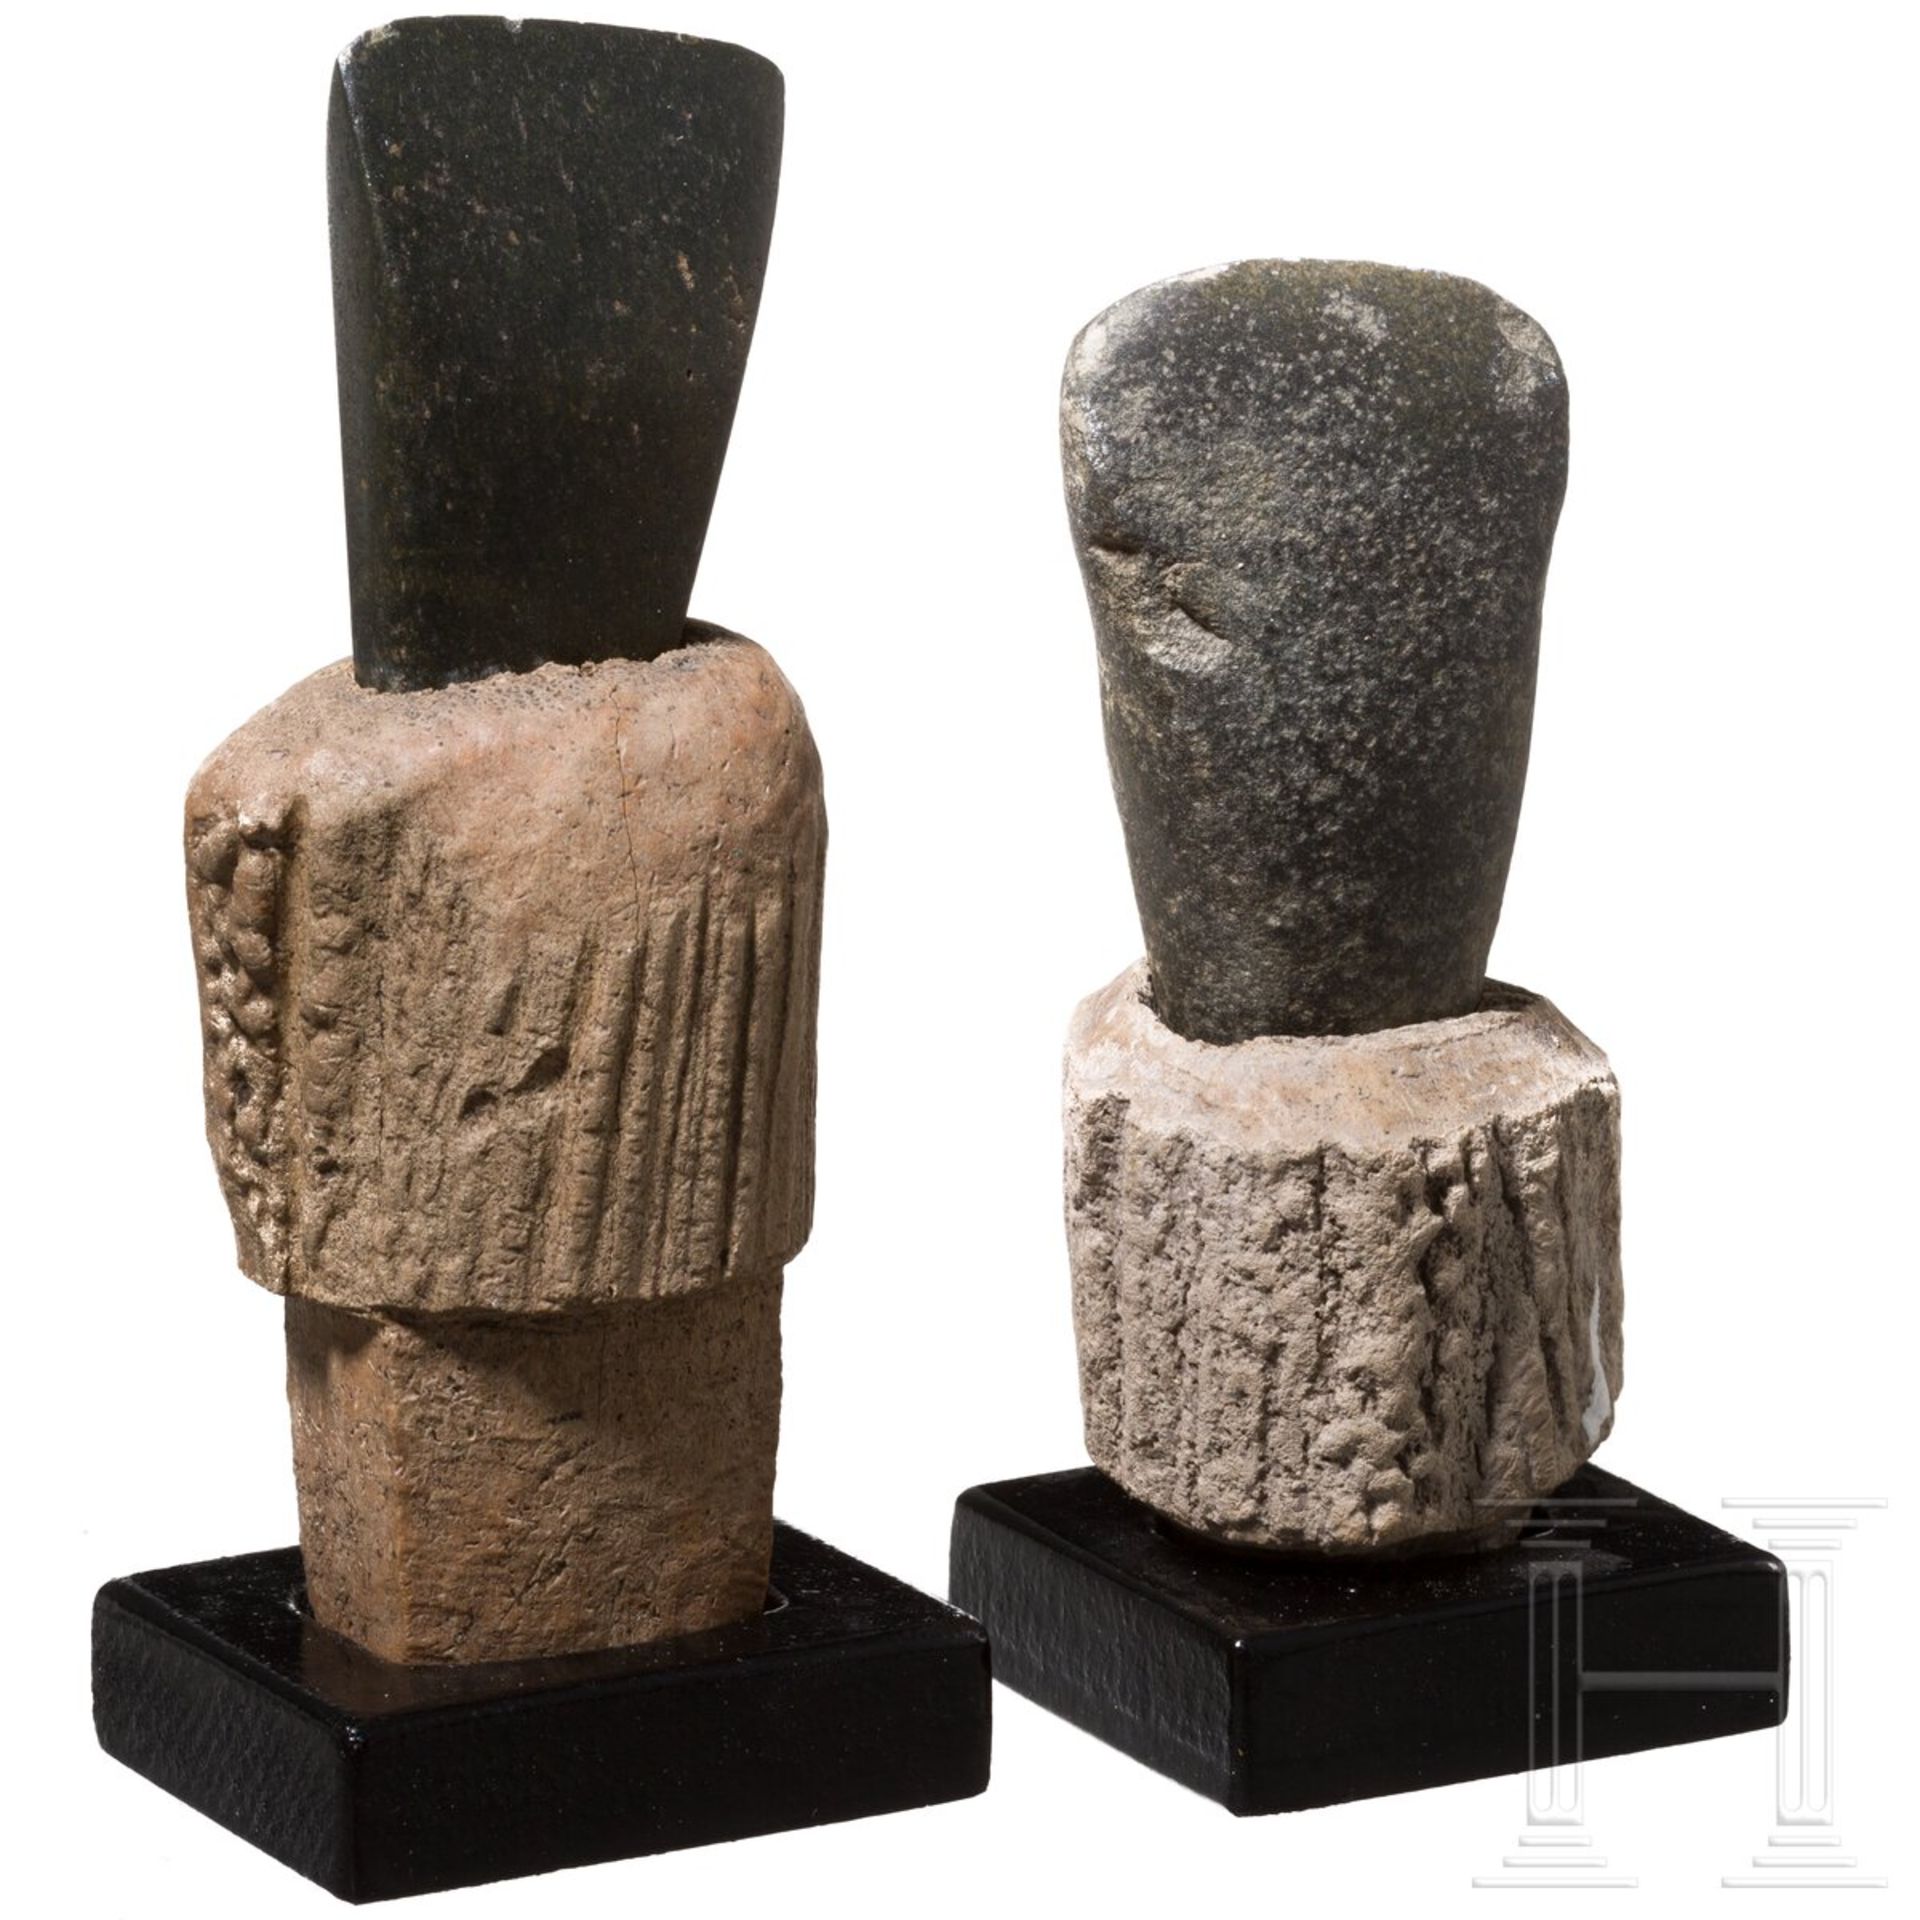 Zwei stumpfnackige Steinbeilklingen mit zugehörigem Geweihfutter, mittlere Jungsteinzeit Mitteleurop - Image 2 of 4